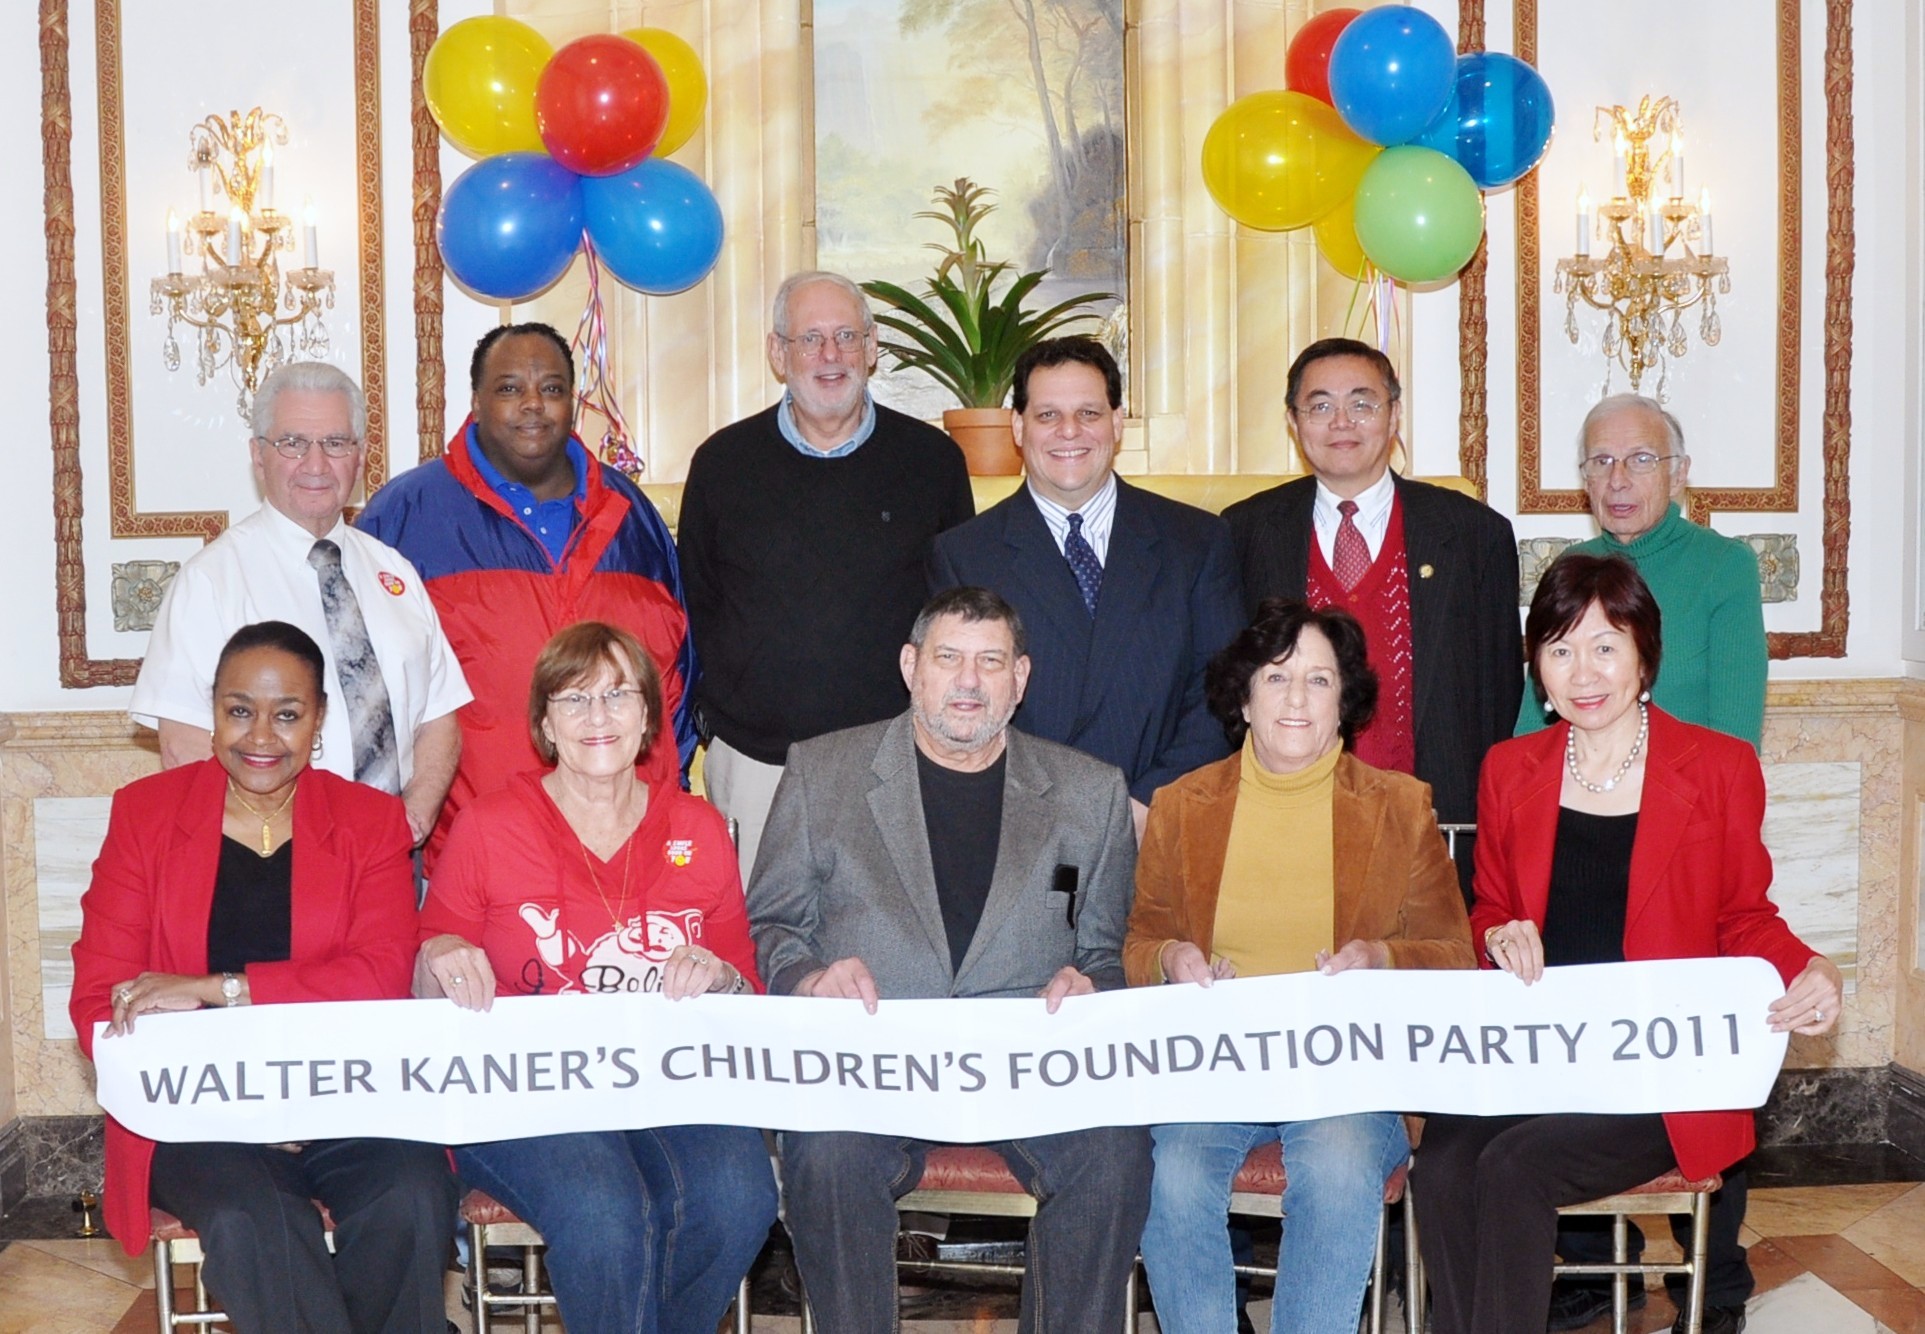 Walter Kaner Children's Foundation staff